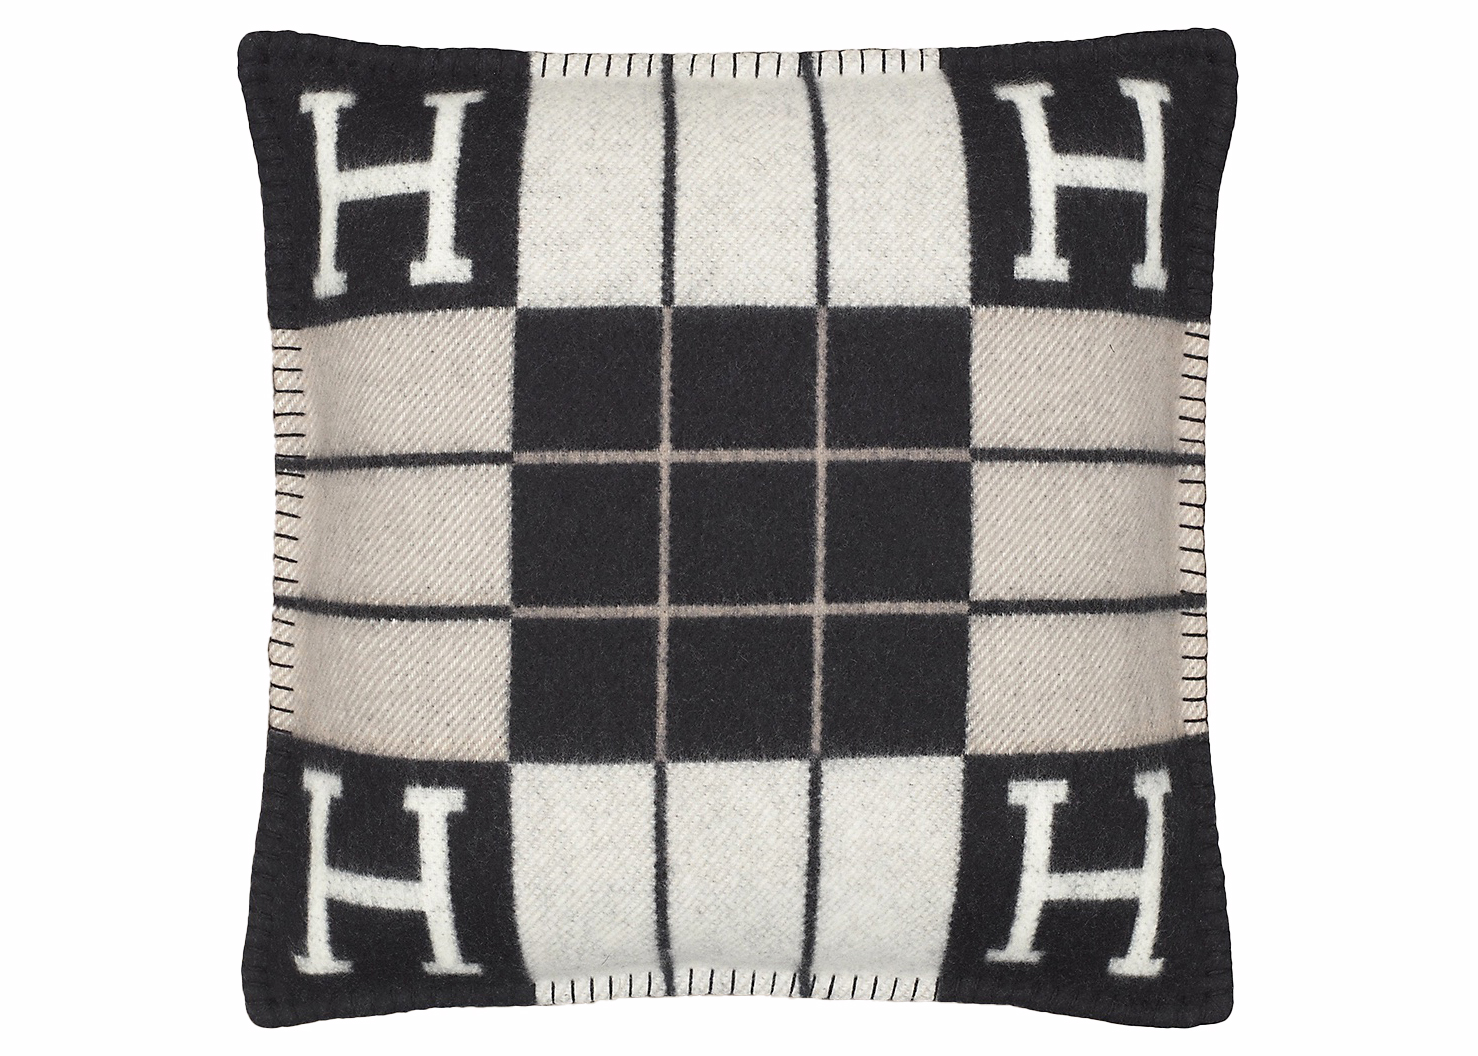 Hermes Avalon III Pillow Small Model Ecru Noir in Merinos Wool